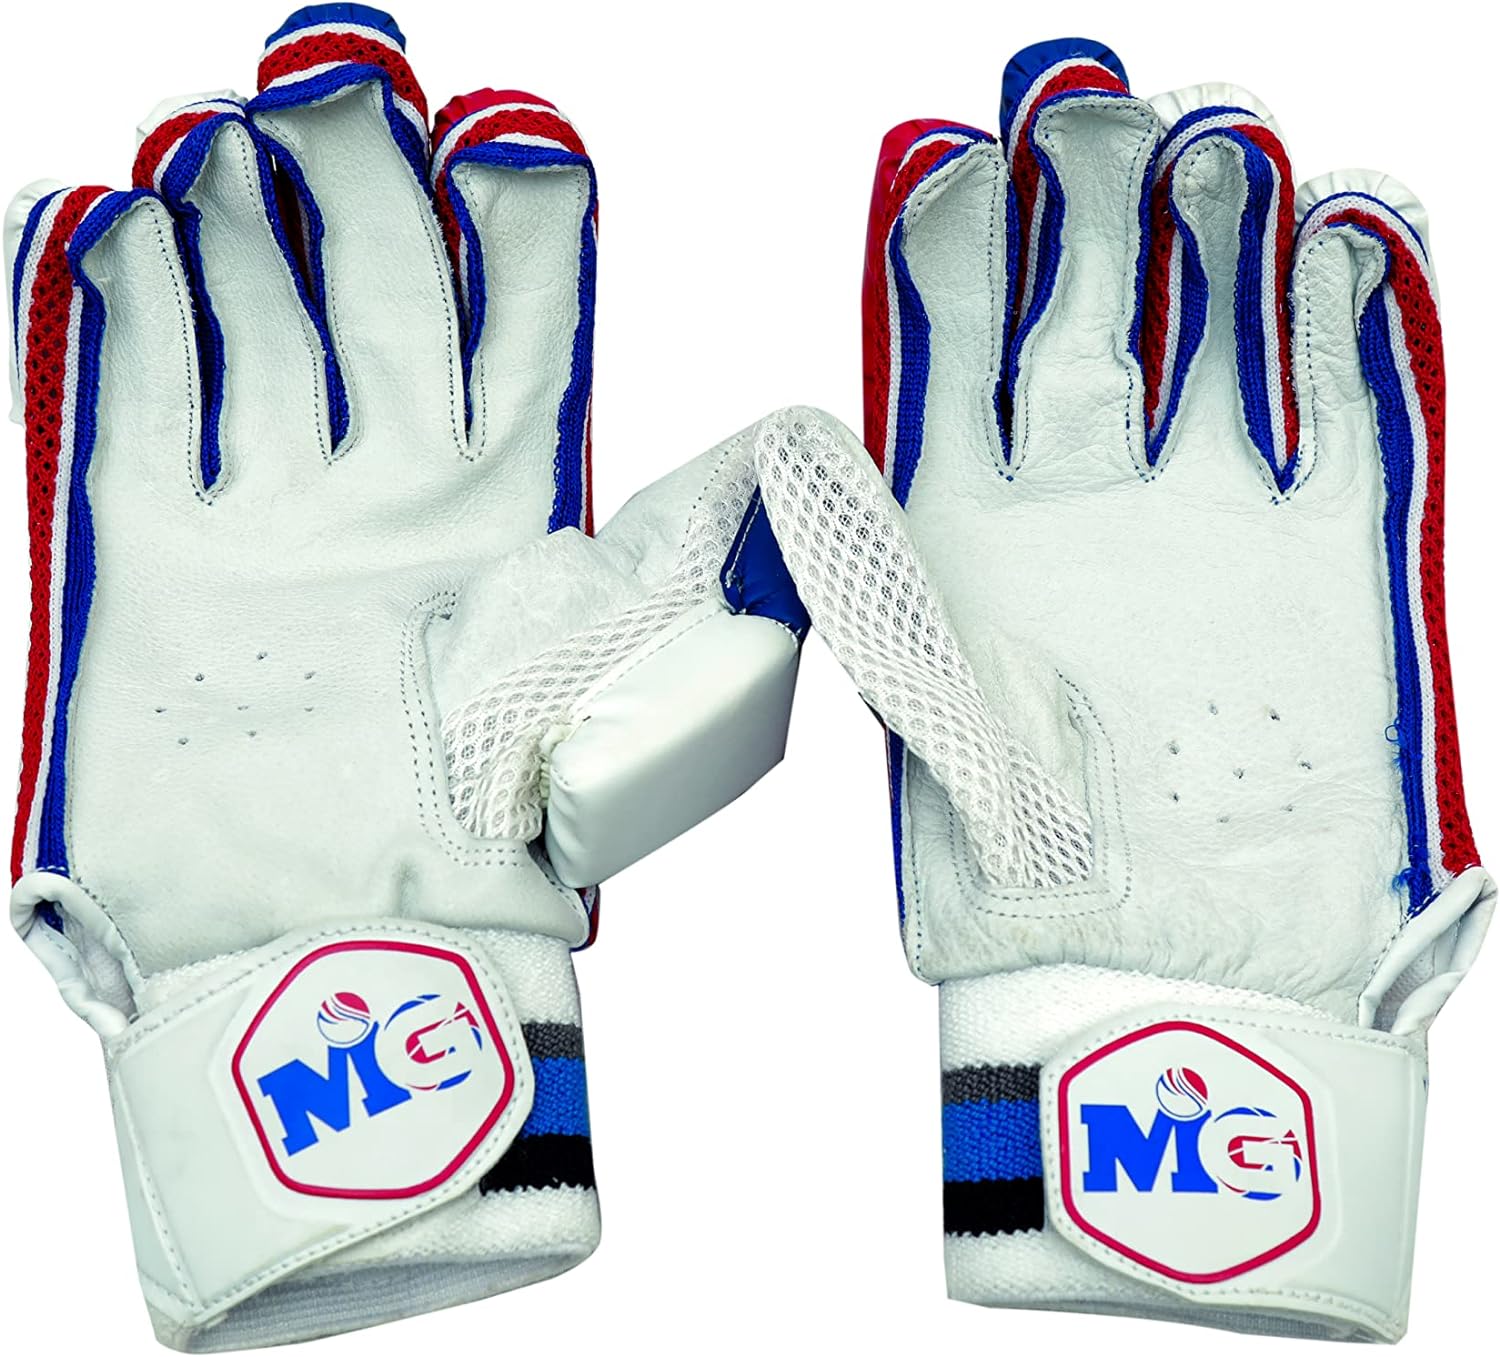 MG Cricket Batting Gloves Medium